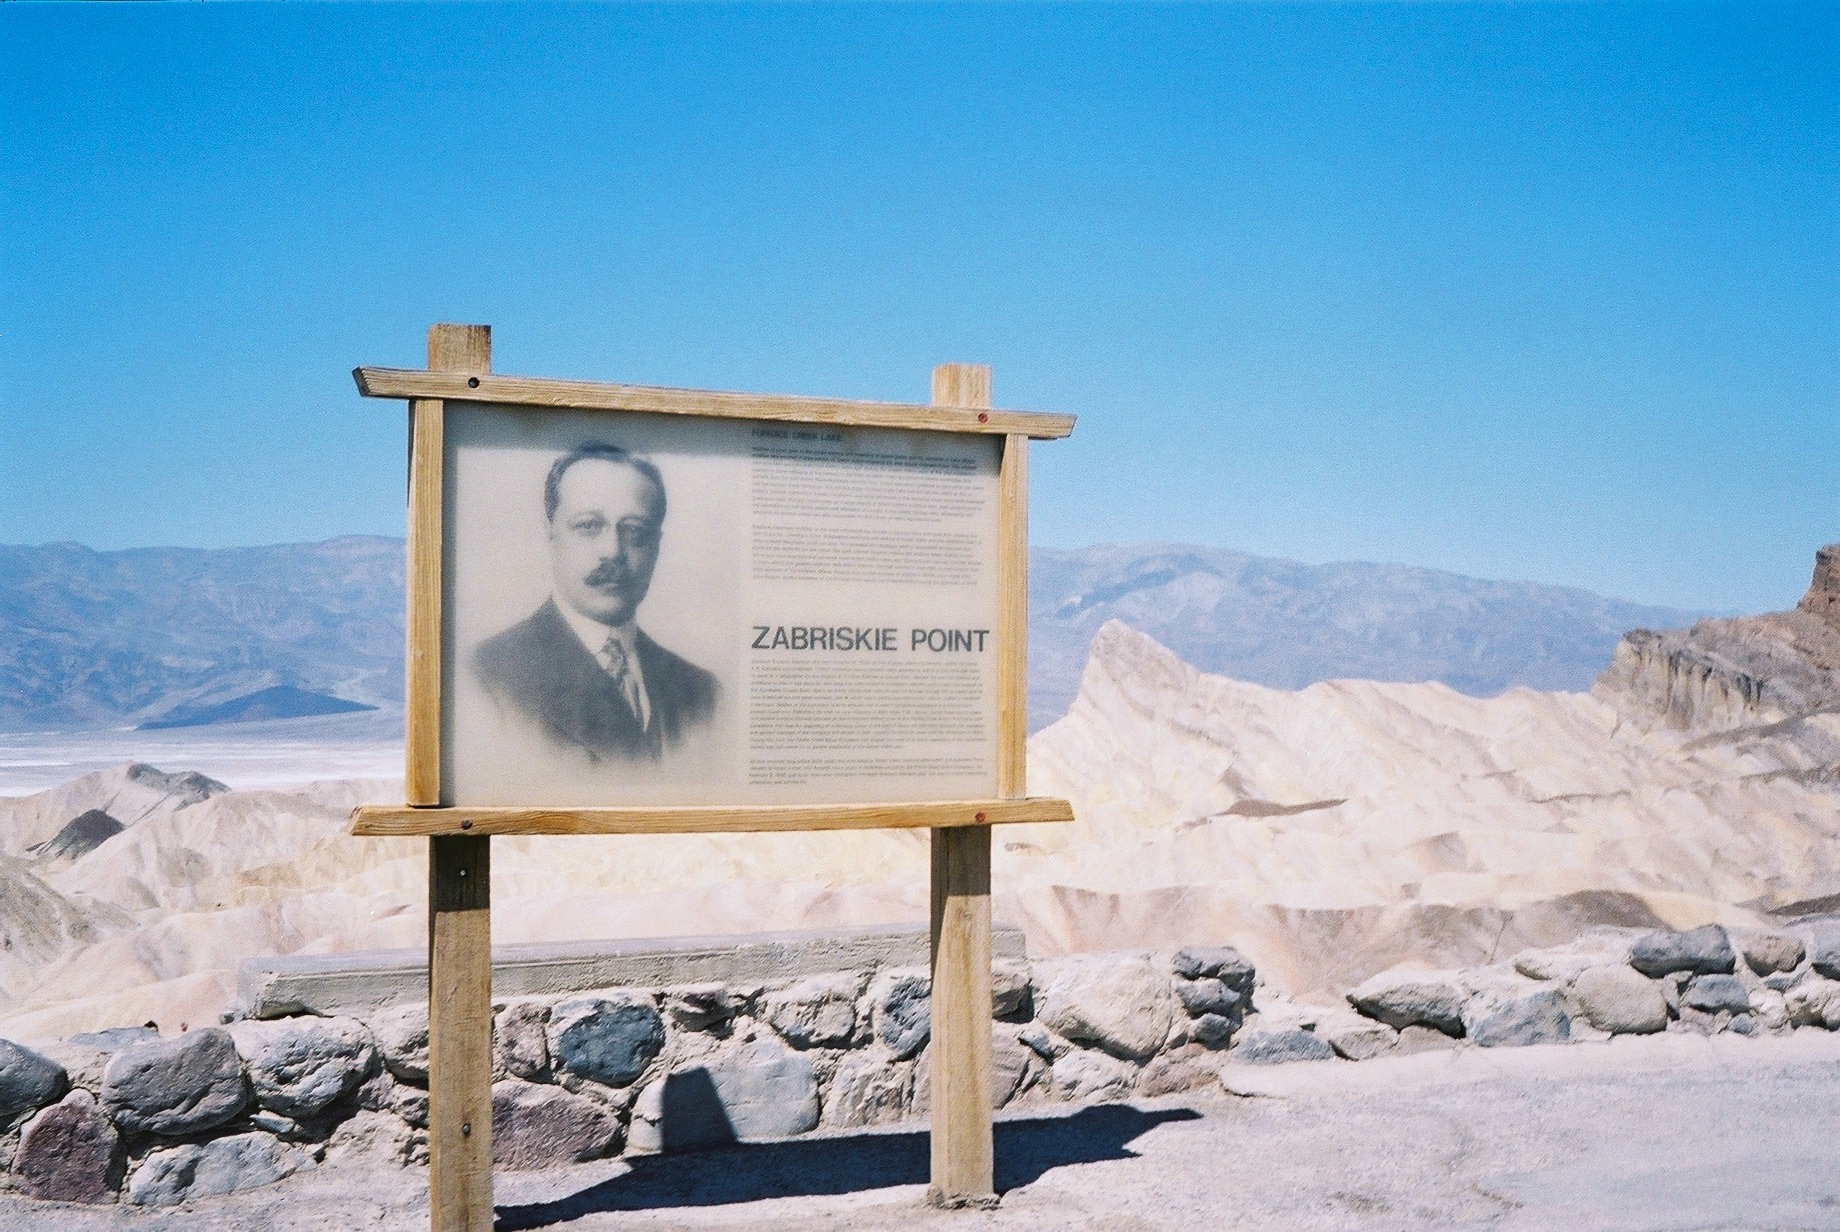 Zabriskie Point sign in Death Valley.